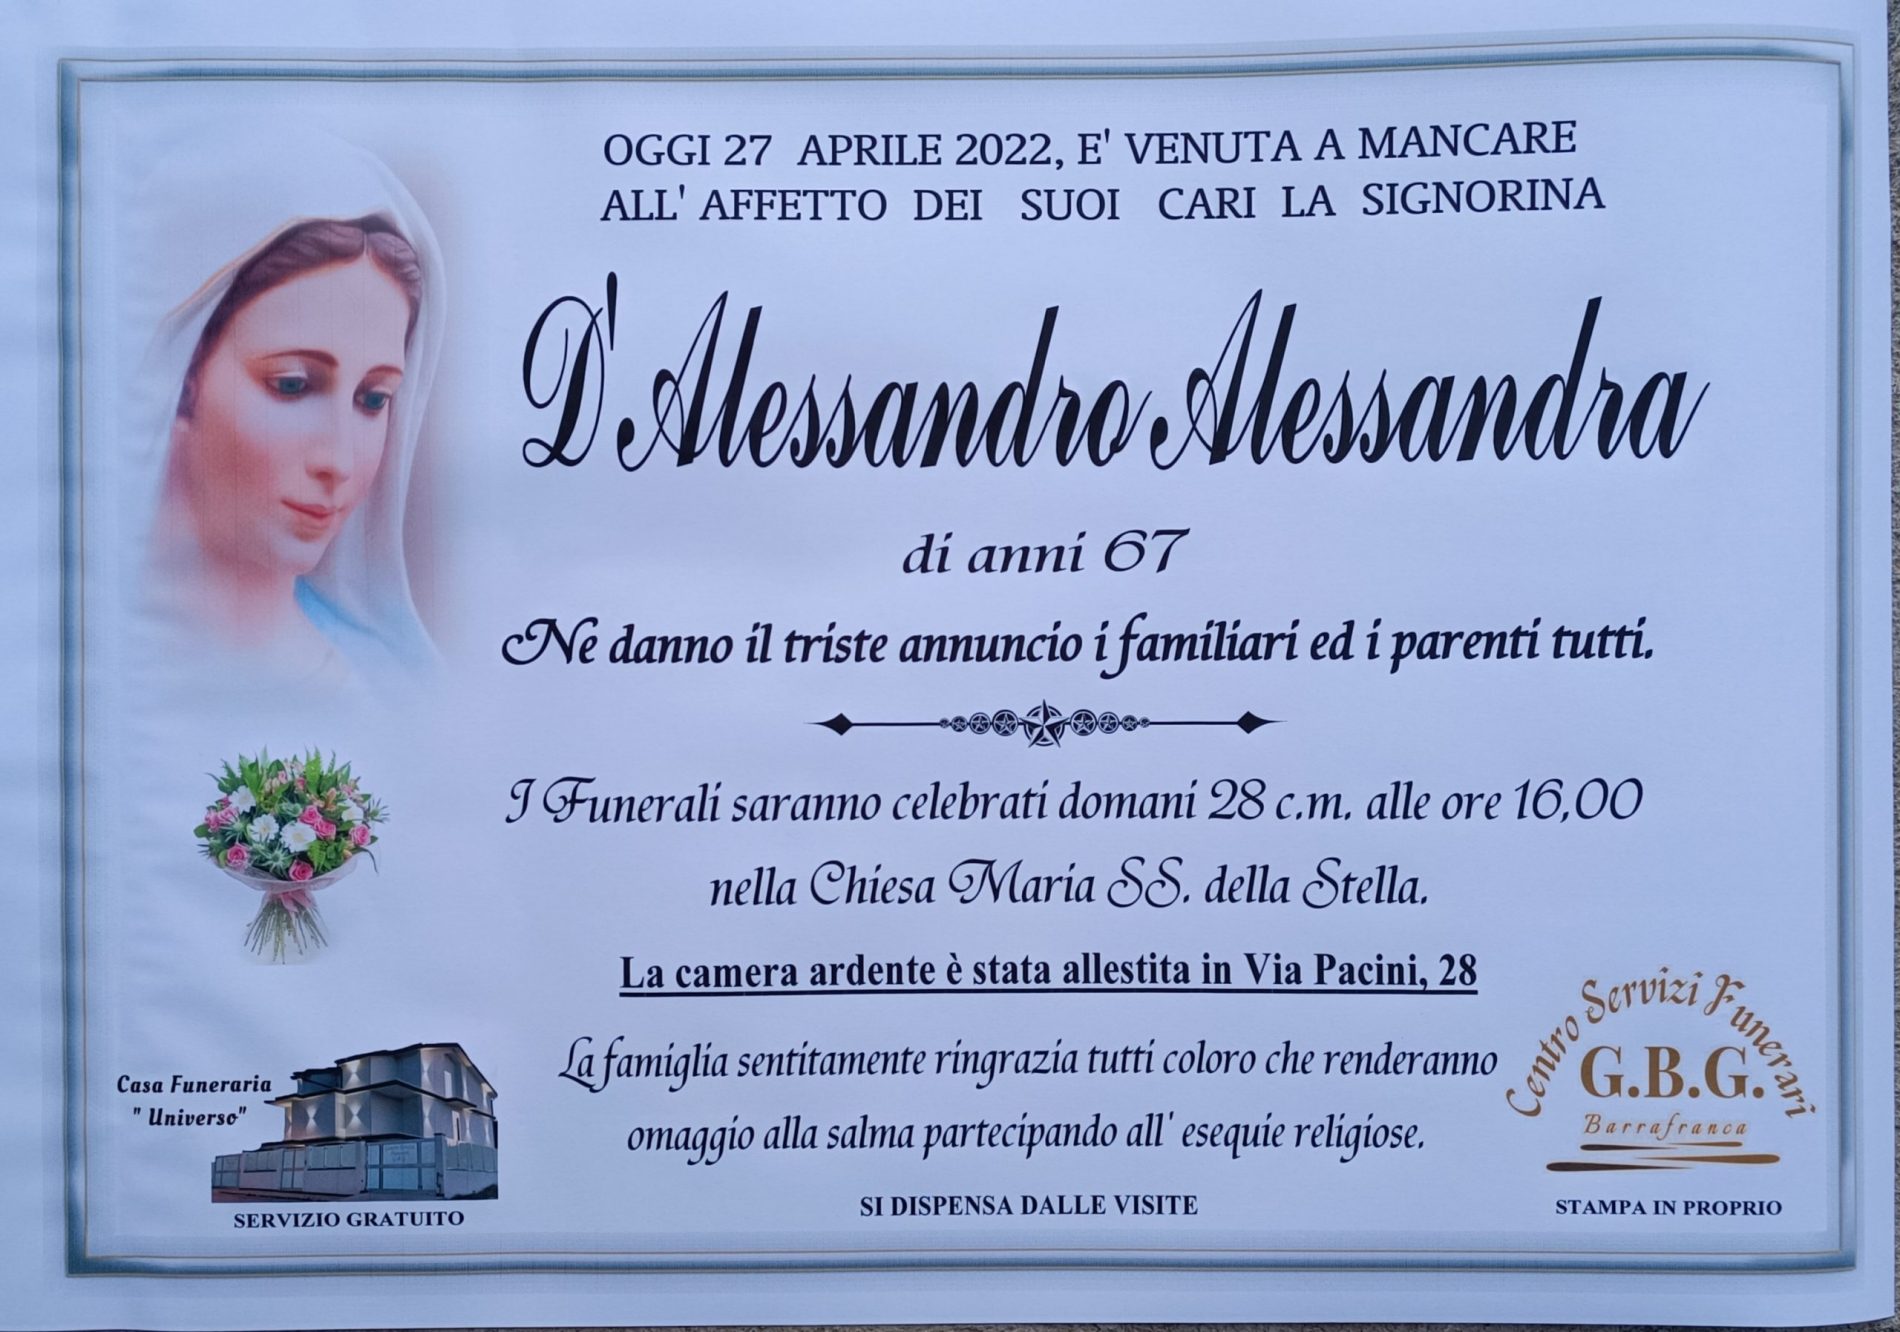 Annuncio servizi funerari agenzia G.B.G. signora D’Alessandro Alessandra di anni 67